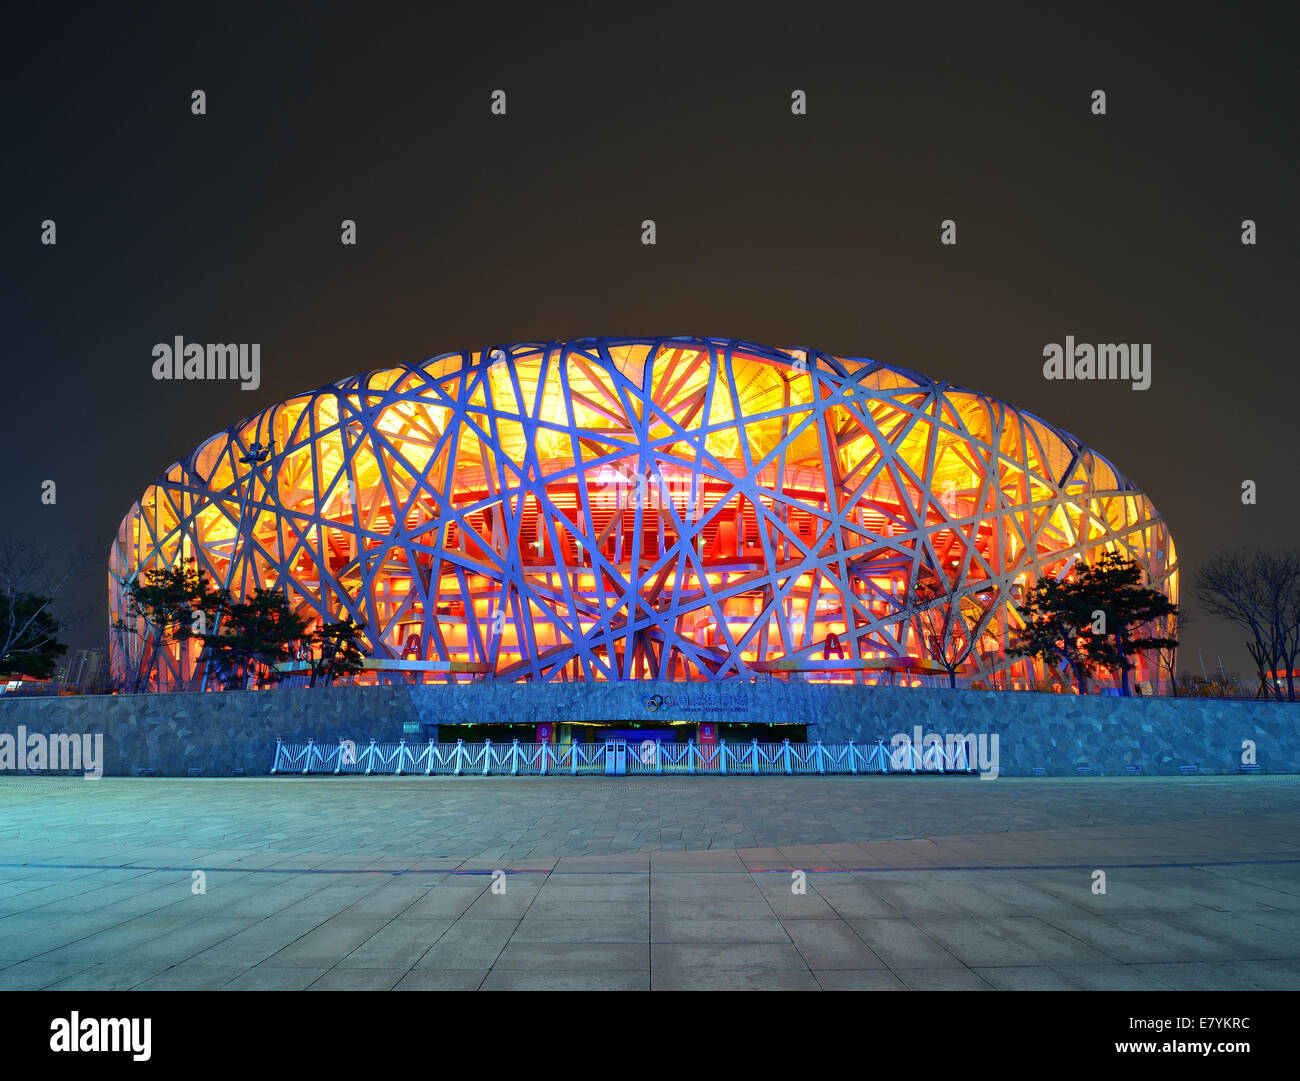 BEIJING, CHINA - APR 7: Estadio Nacional de Pekín en la noche del 7 de abril de 2013 en Beijing, China. El estadio fue creado para los Juegos Olímpicos y Paralímpicos de Verano de 2008. Foto de stock